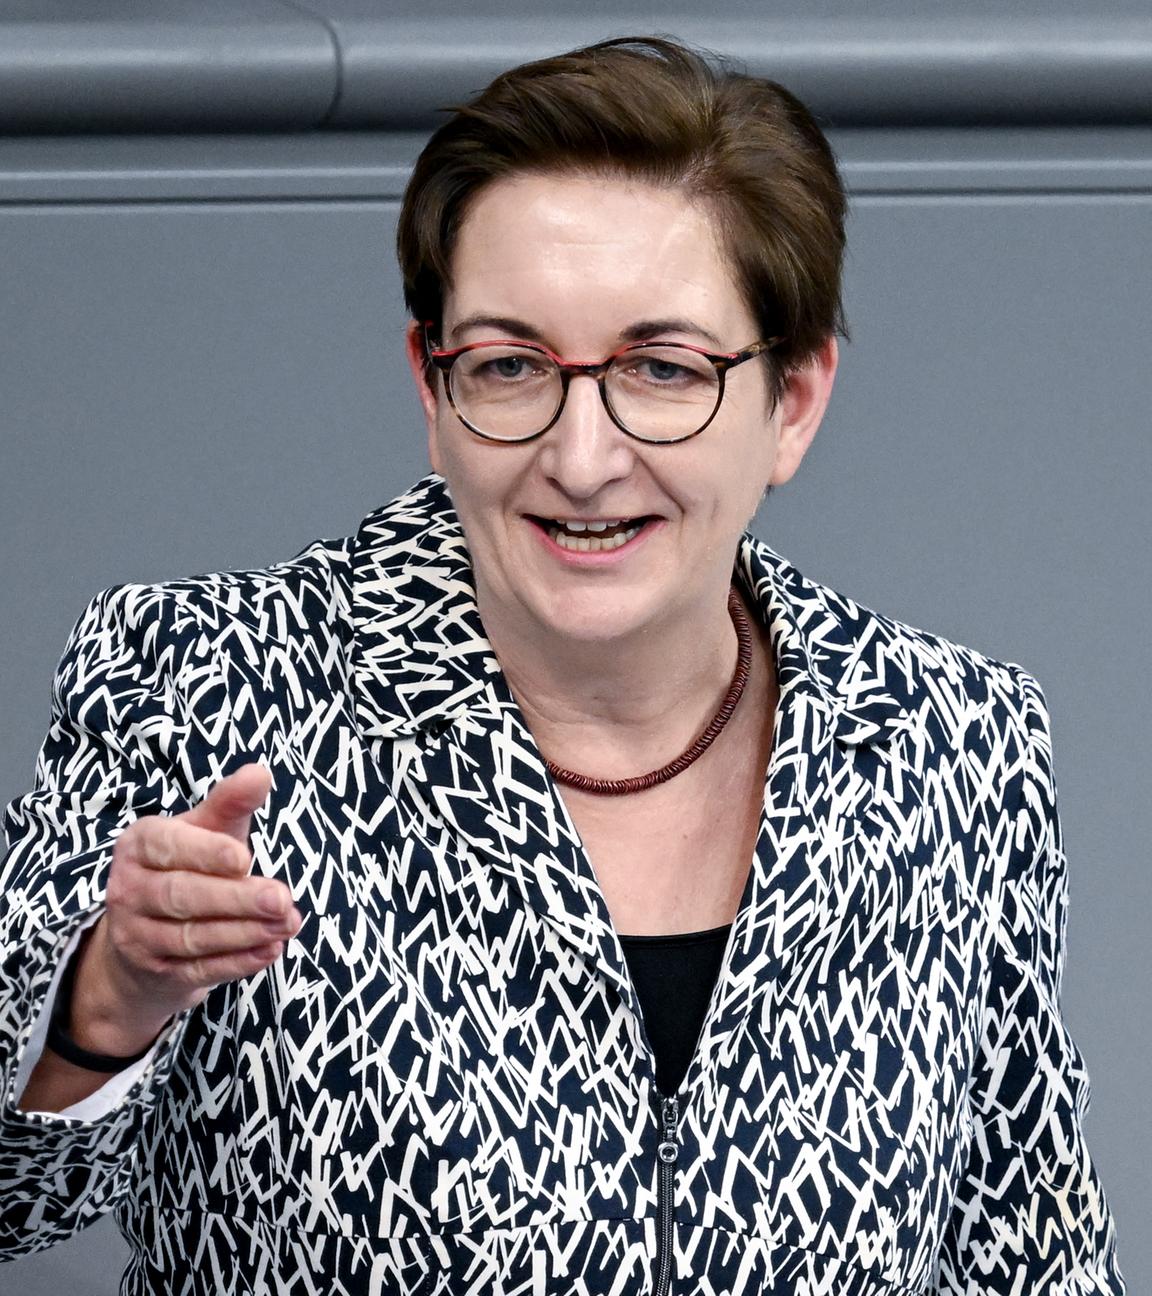 Bundesbauministerin Klara Geywitz spricht während der Sitzung des Bundestages.